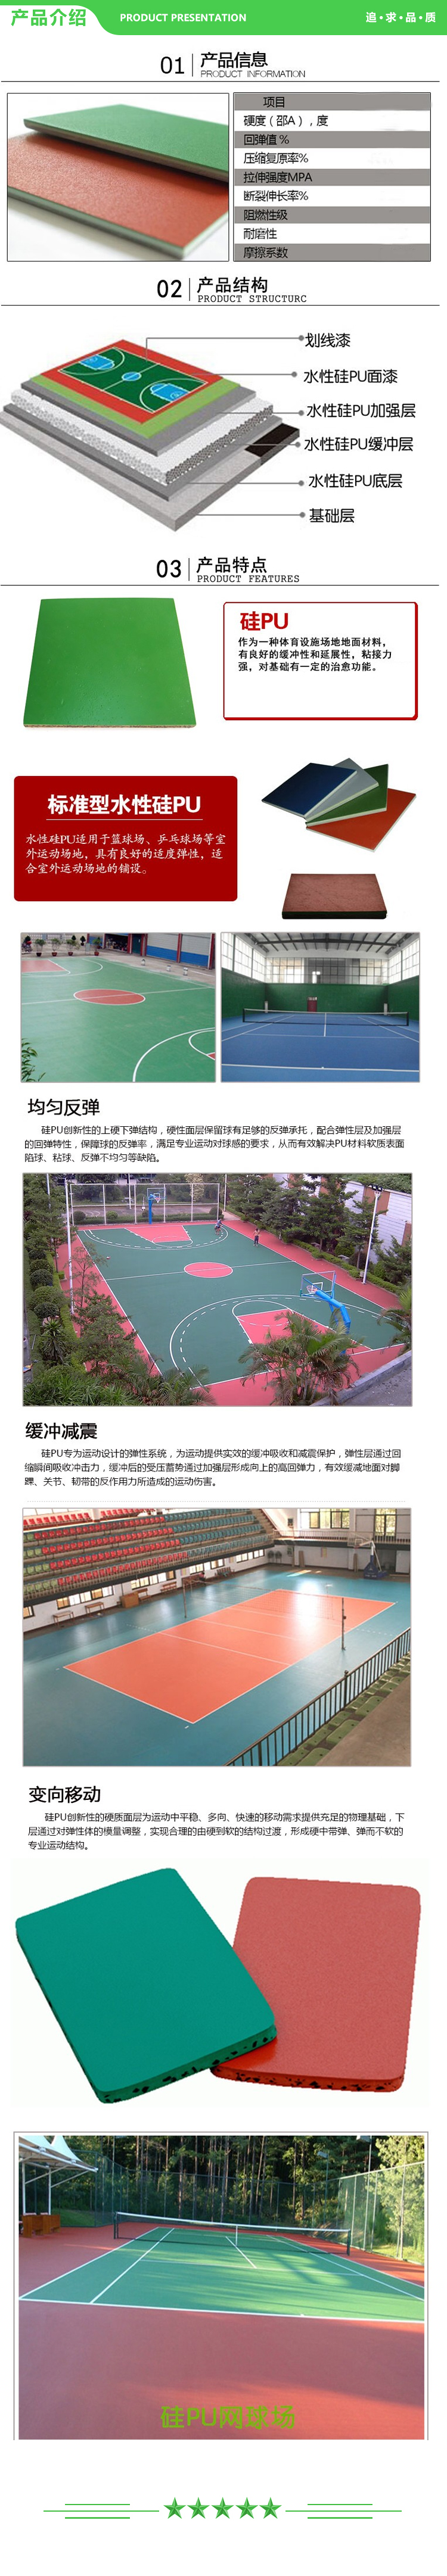 益动未来 5mm厚硅pu材料-平米价格 水性硅pu篮球场施工 户外硅PU羽毛球场网球场材料 2.jpg